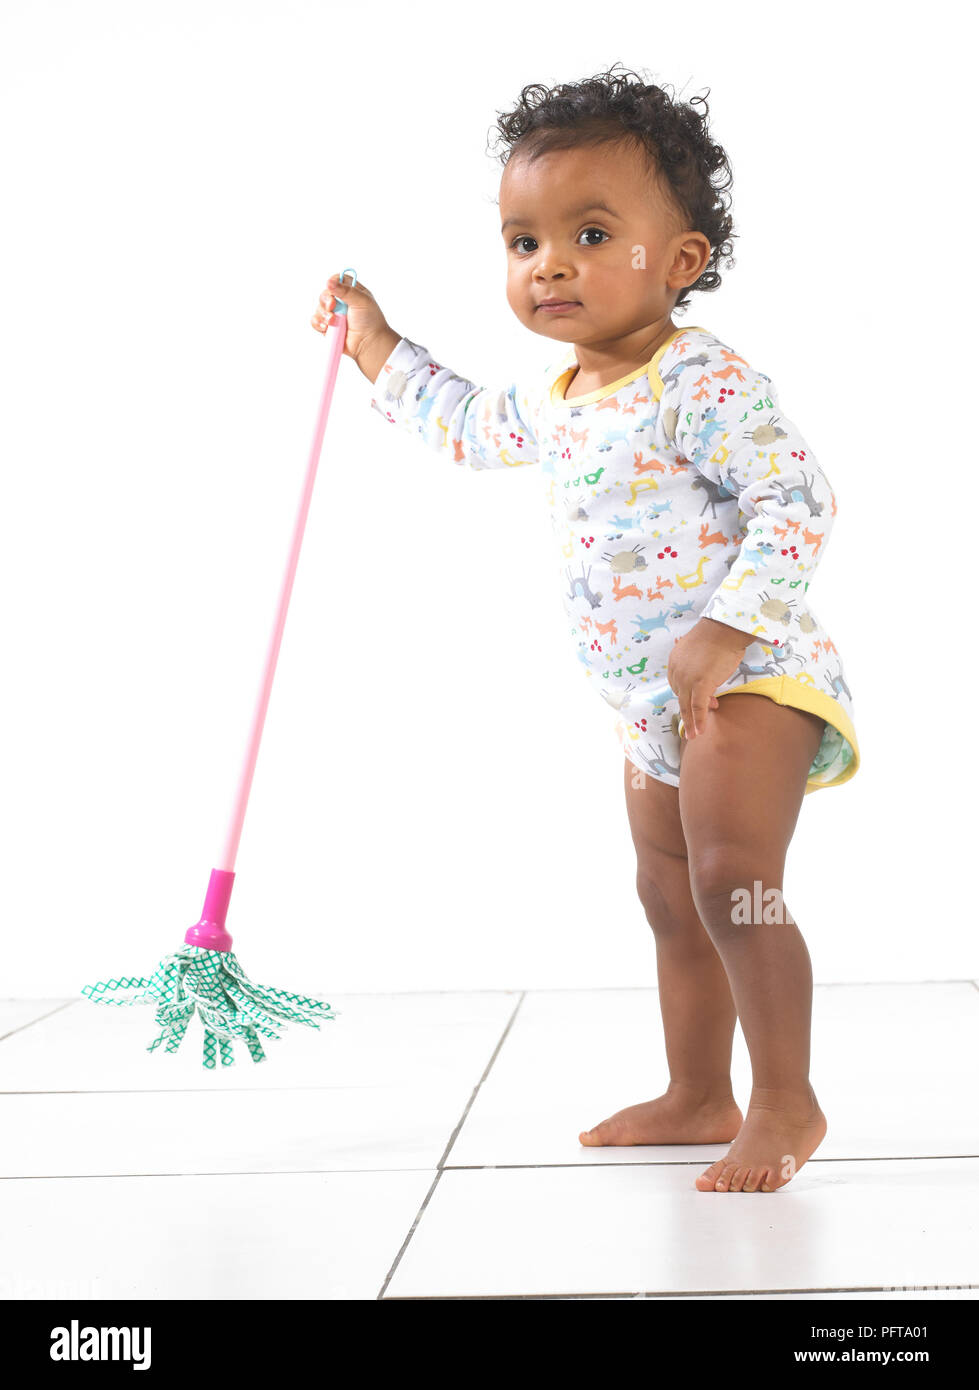 Ragazza in piedi tenendo toy mop, 18 mesi Foto Stock